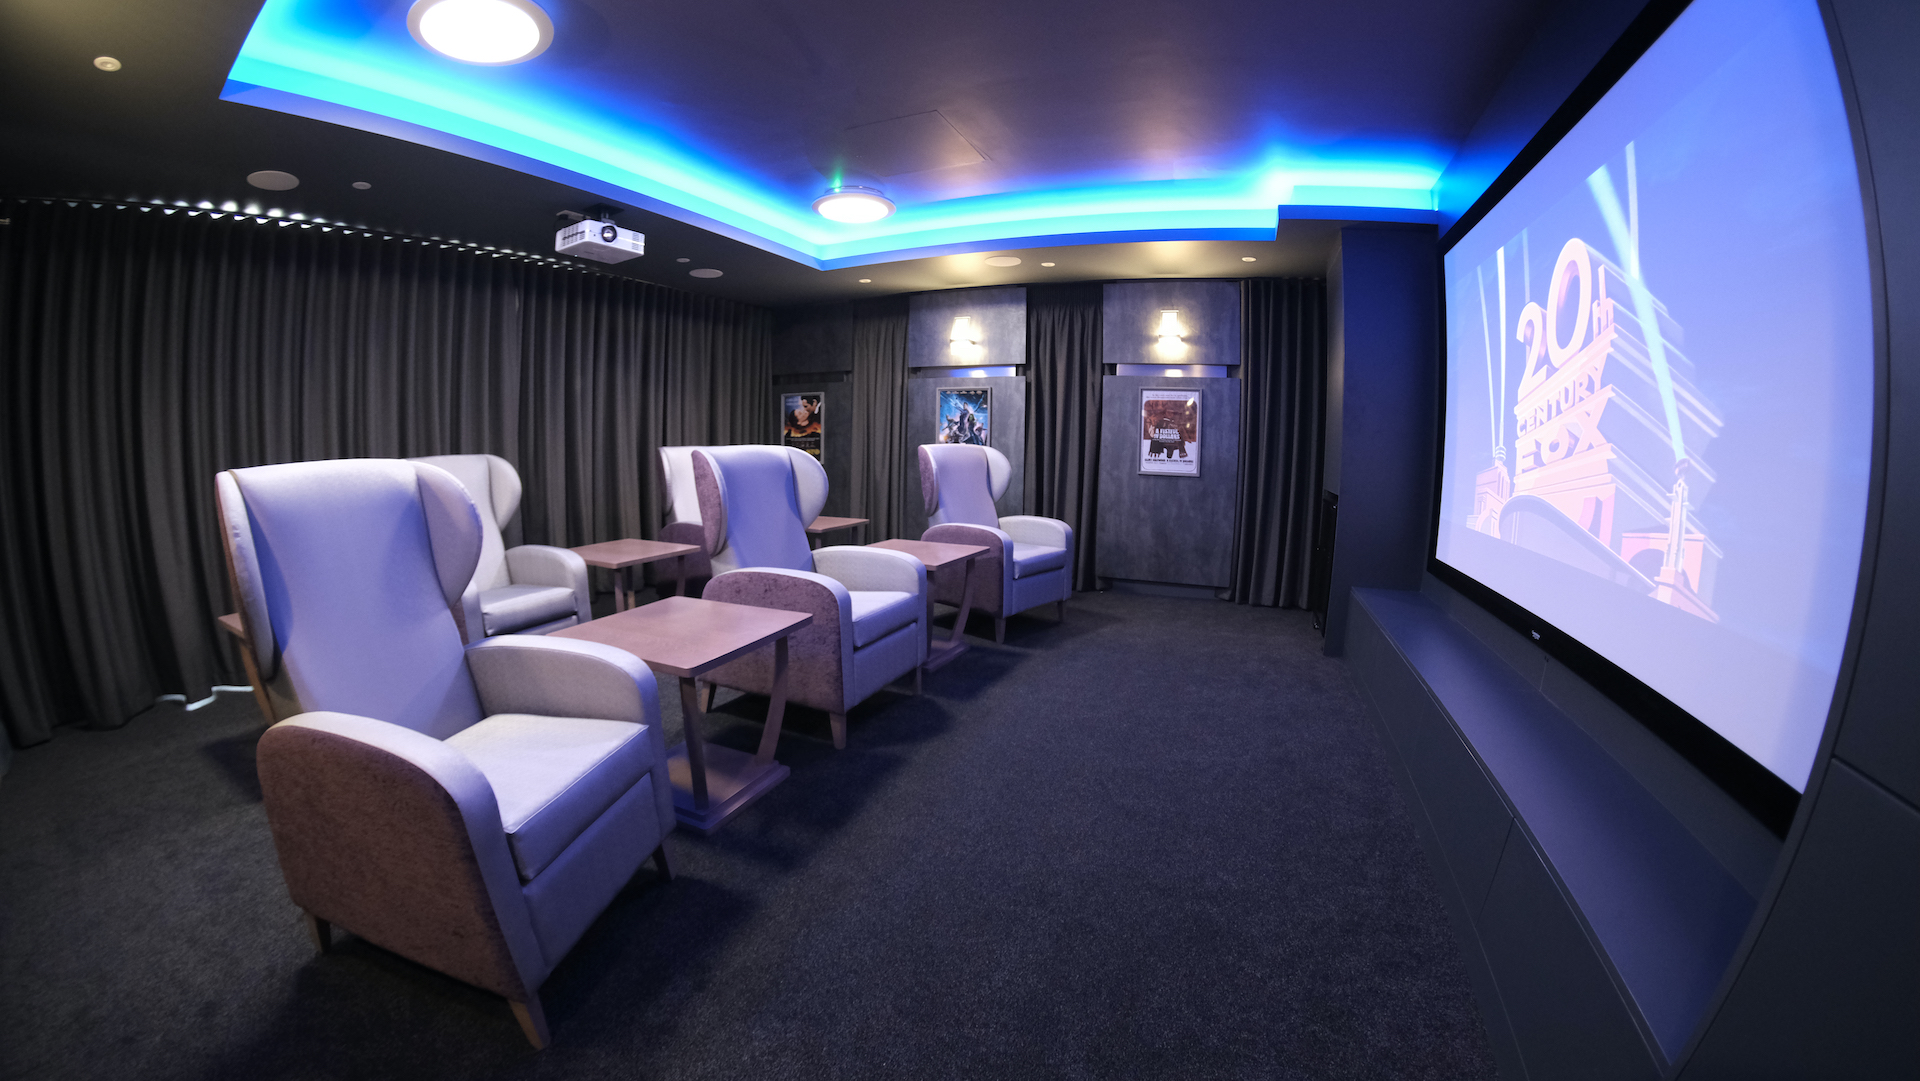 Cinema Room Installation - Fernlea Care Home - Manchester See-AV